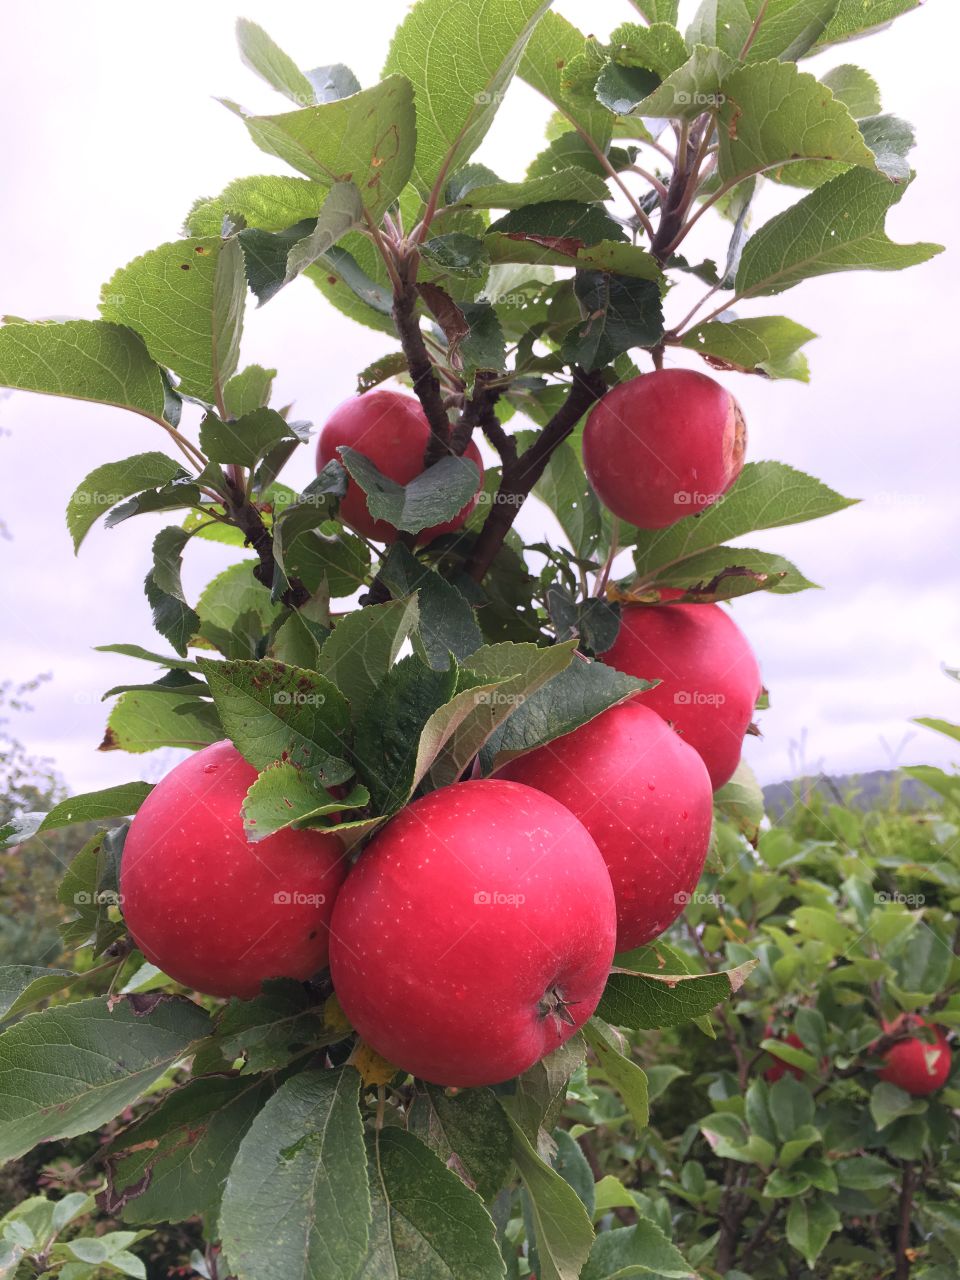 Apple. Good season. Kristiansand, Norway.